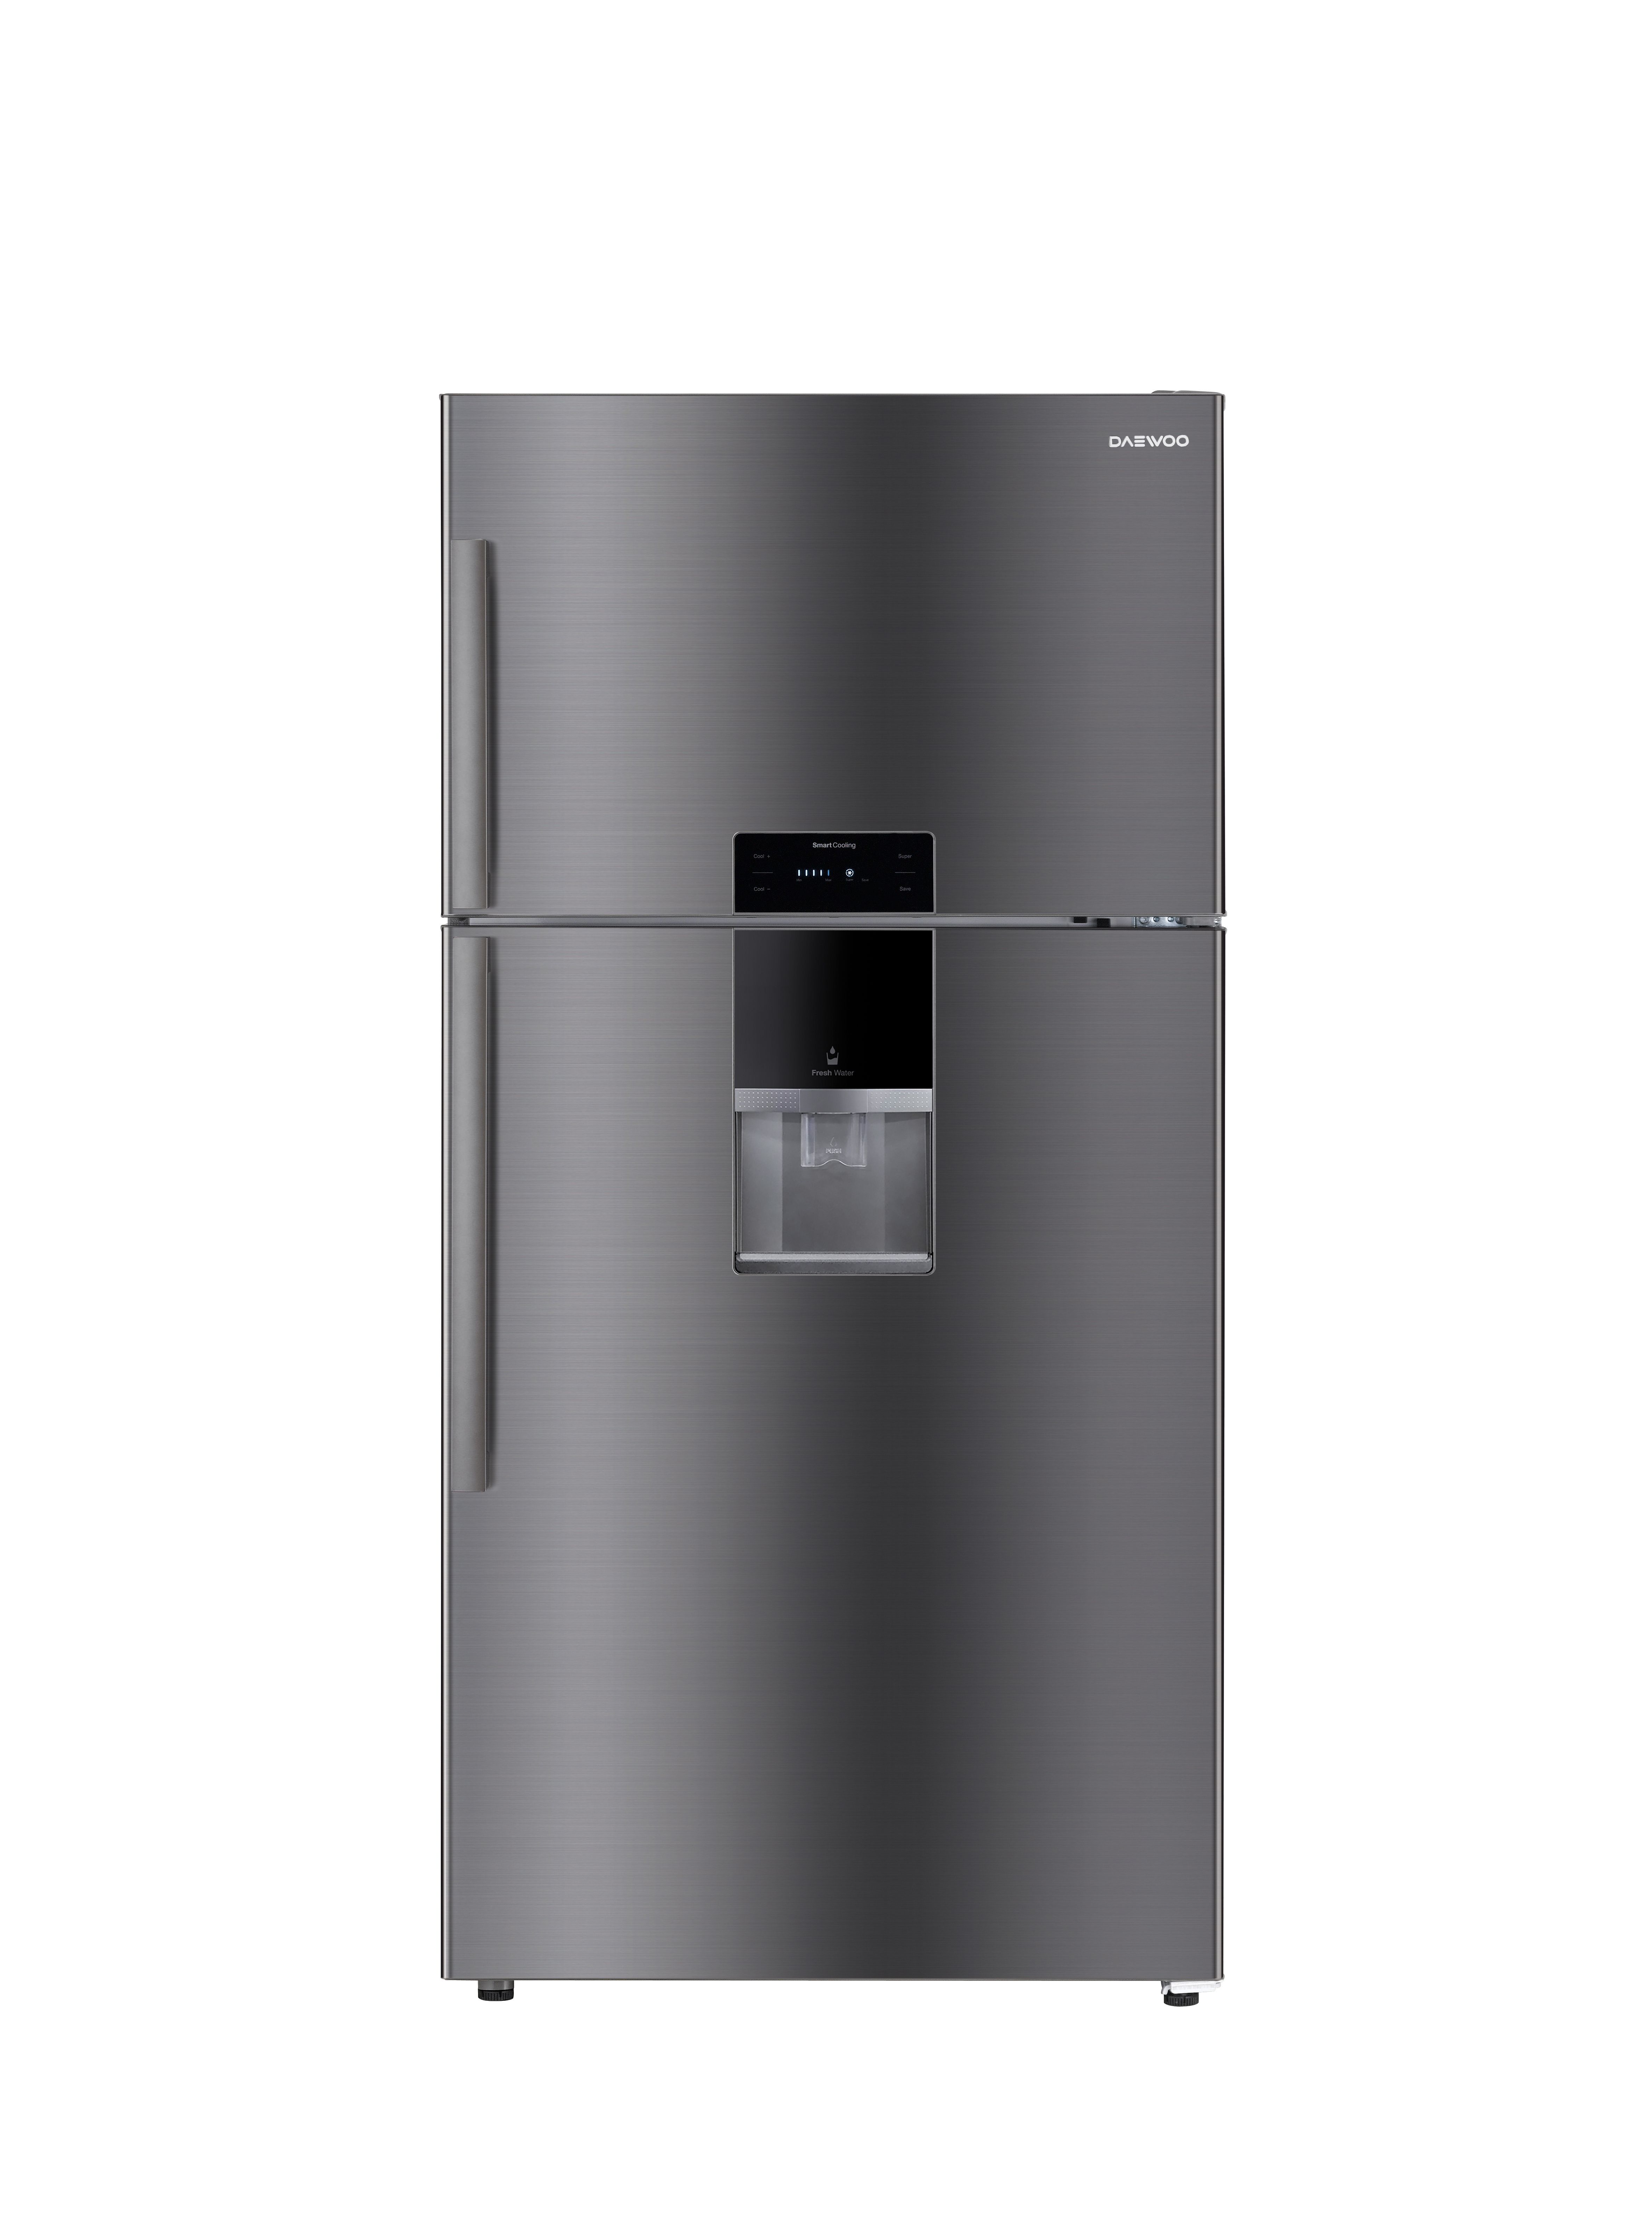 Купить холодильник дэу. Холодильник Daewoo Electronics FGI-561efg. Холодильник Daewoo fgi561efg темно-серый (двухкамерный). Daewoo Electronics модель FGI-561efg. Холодильник Дэу 415rw.